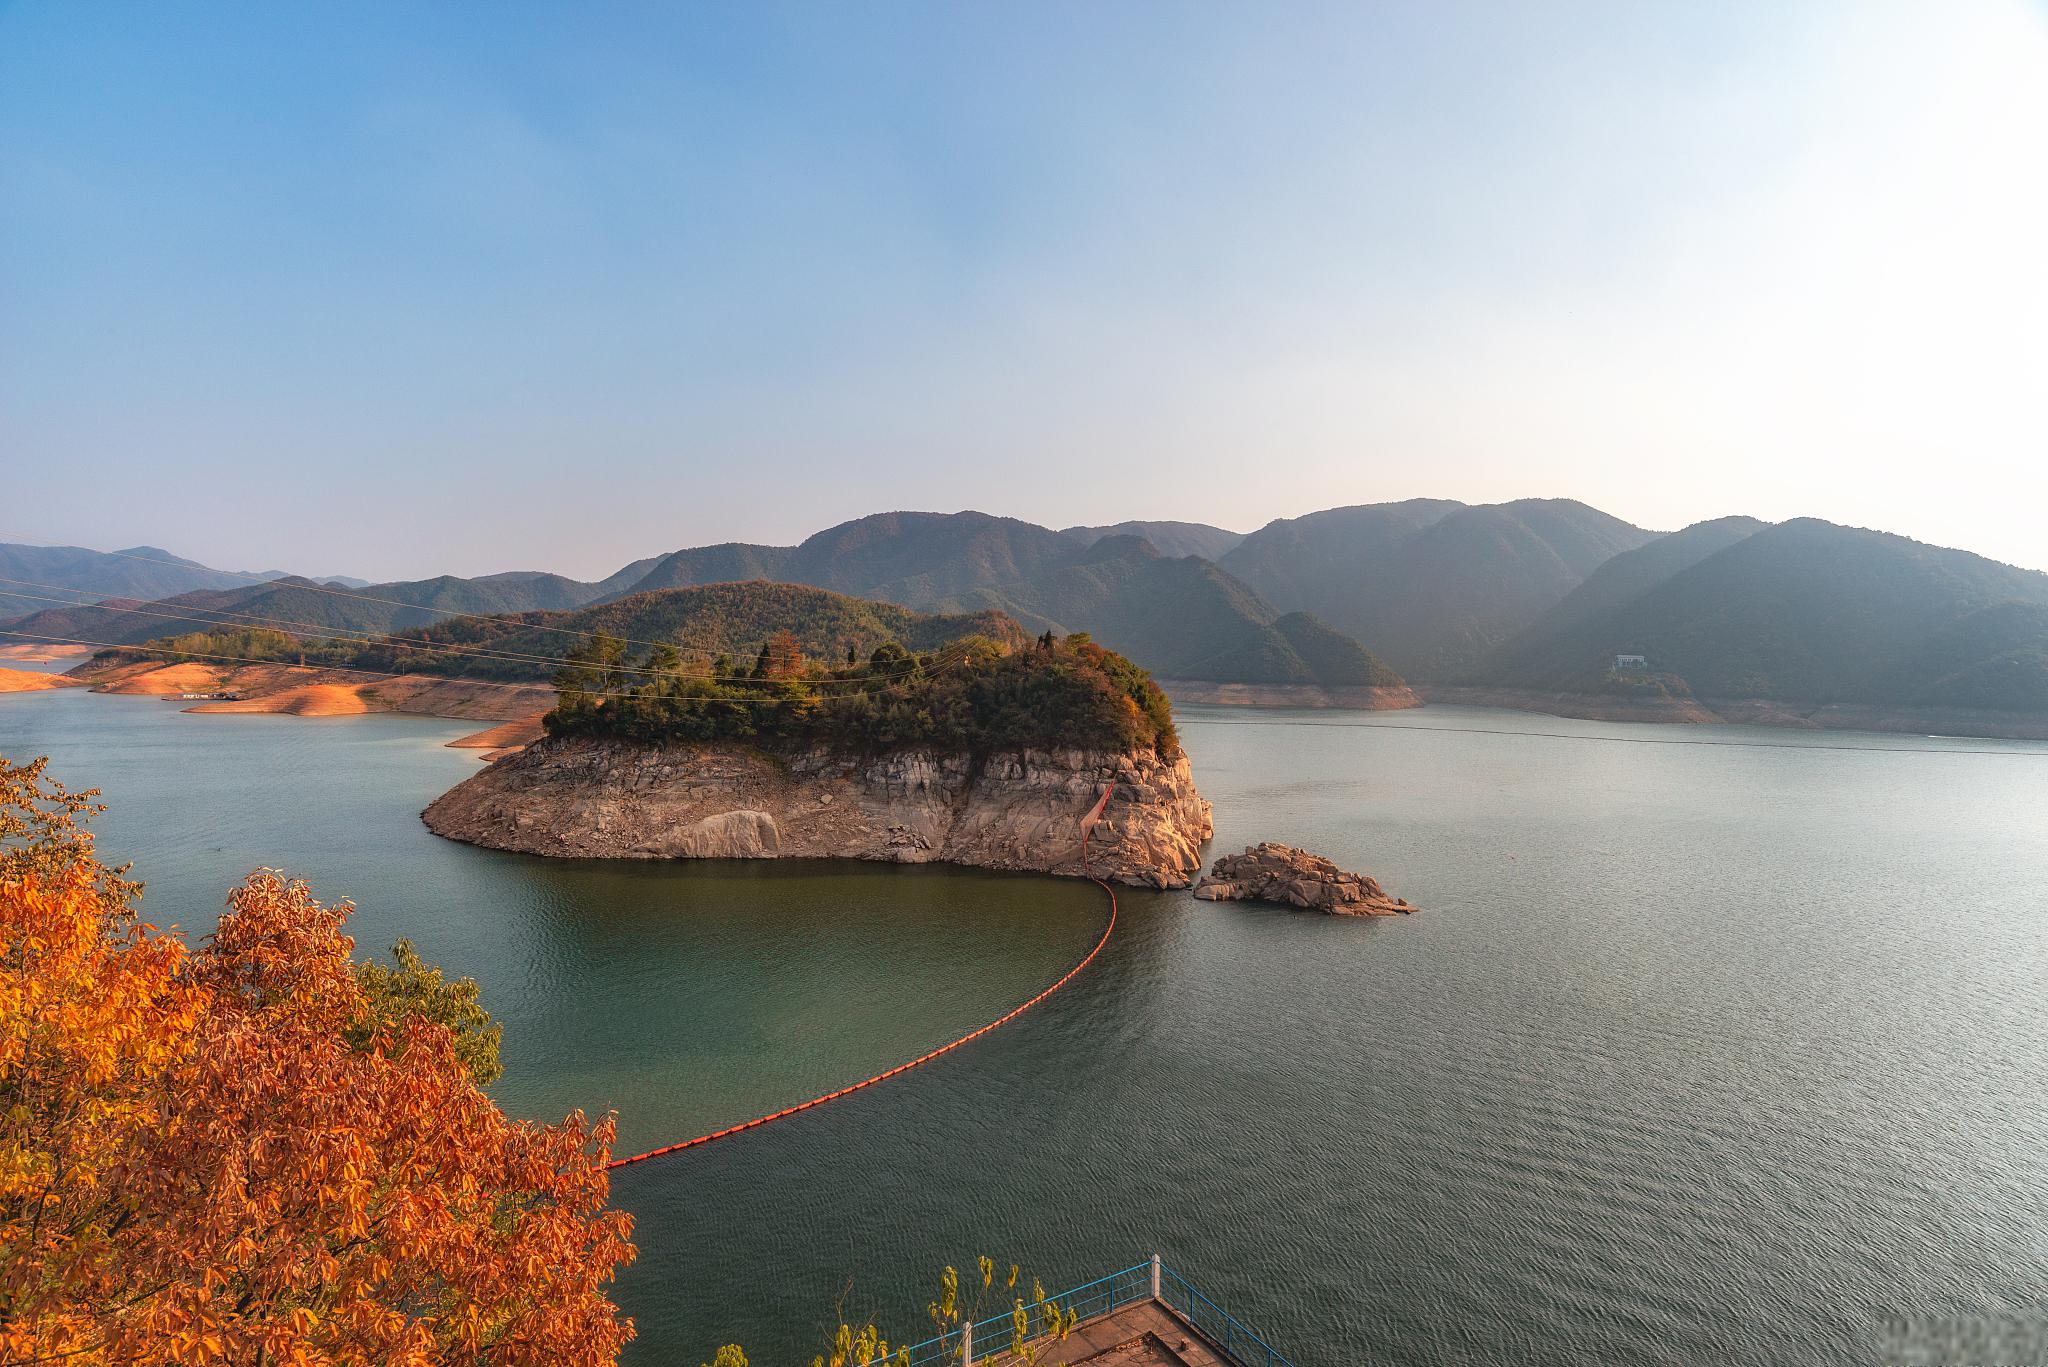 安康市瀛湖景区,值得一游 安康市瀛湖景区,位于陕西省南部,是一个美丽